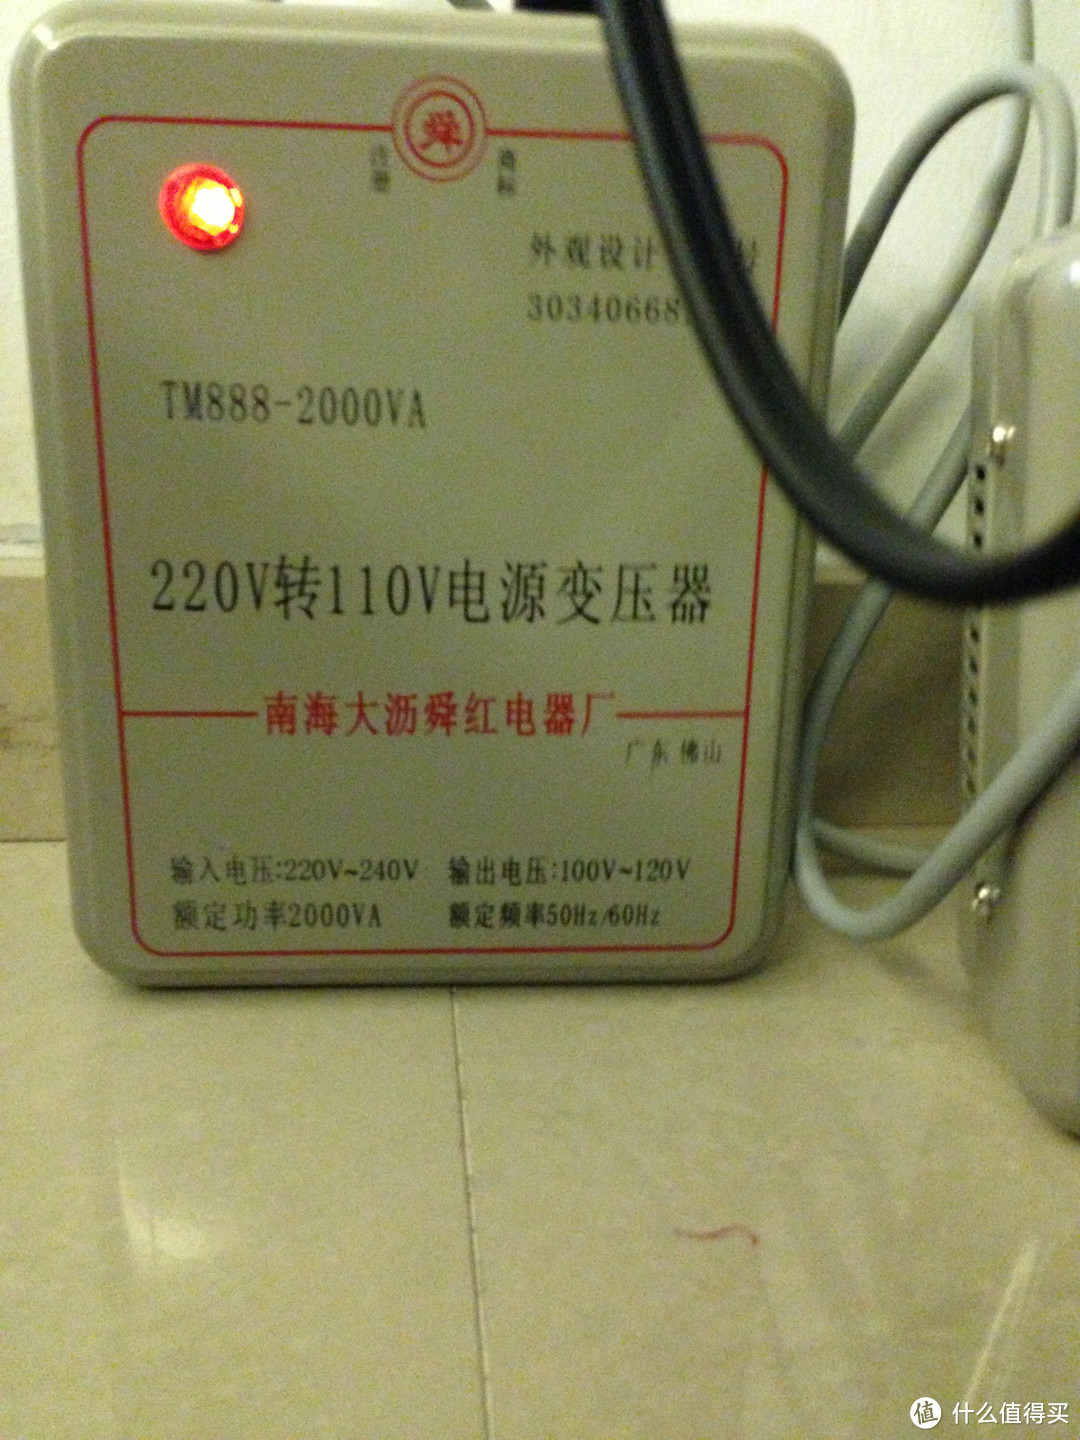 什么值得买！果真值得买！！日淘ZO JIRUSHI 象印  CV-DSH40C 电热水瓶开箱